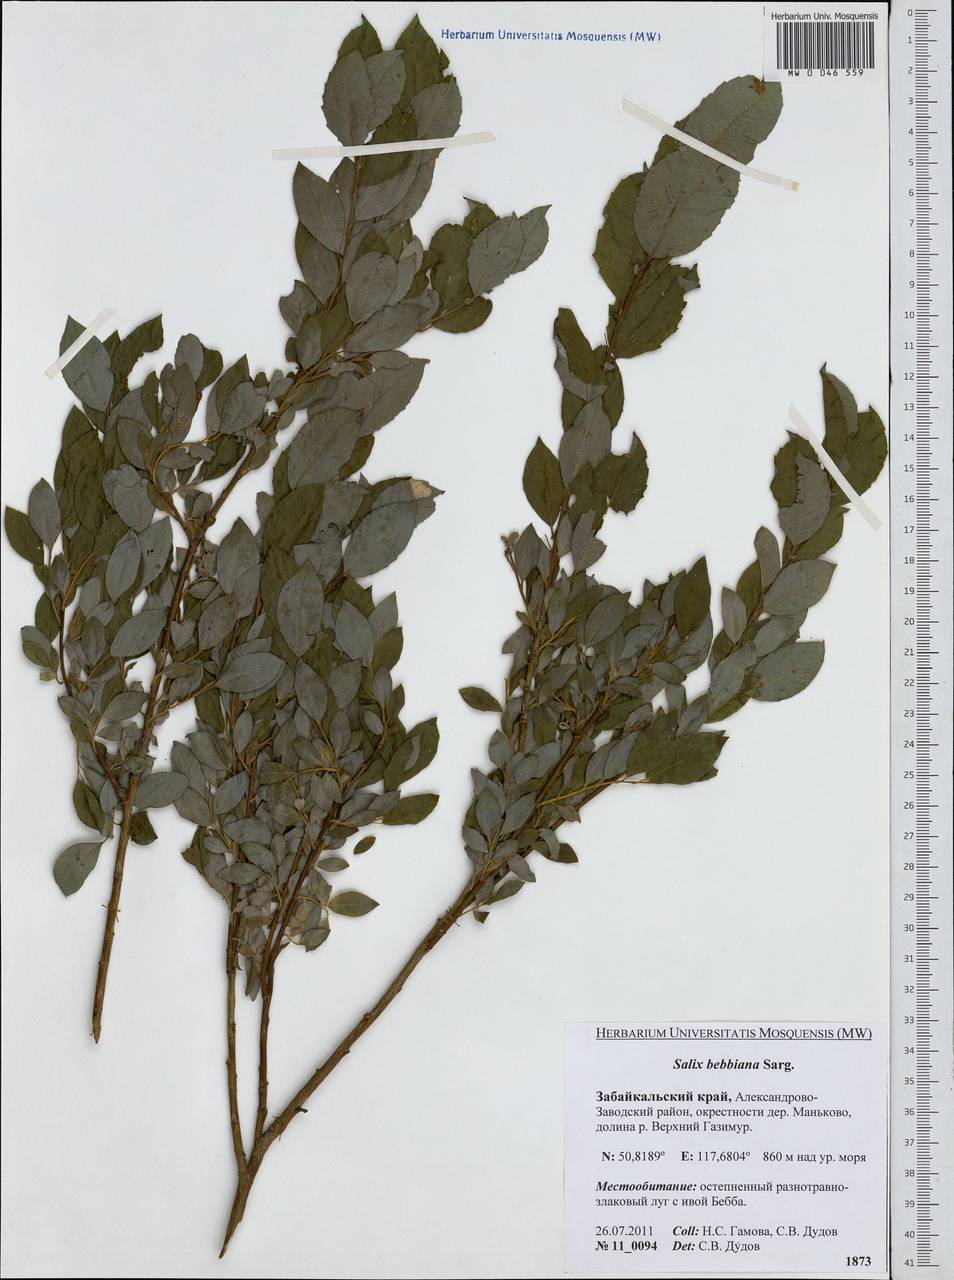 Salix bebbiana Sarg., Siberia, Baikal & Transbaikal region (S4) (Russia)